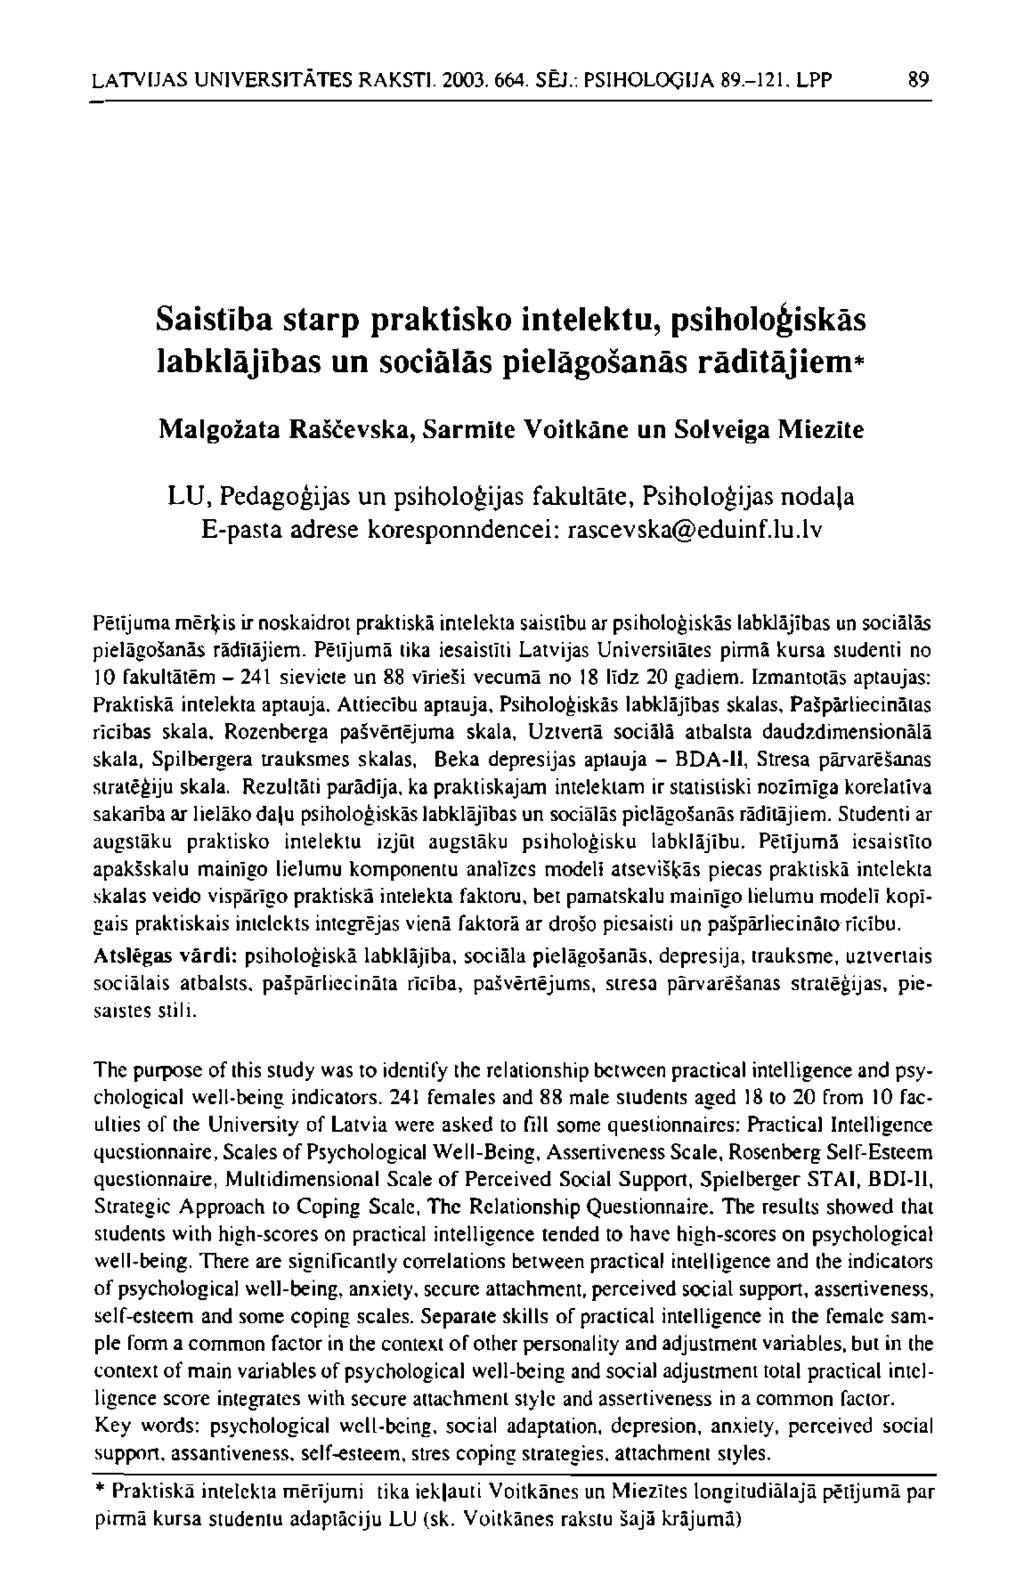 LATVIJAS UNIVERSITĀTES RAKSTI. 2003. 664. SĒJ.: PSIHOLOĢIJA 89.-121.